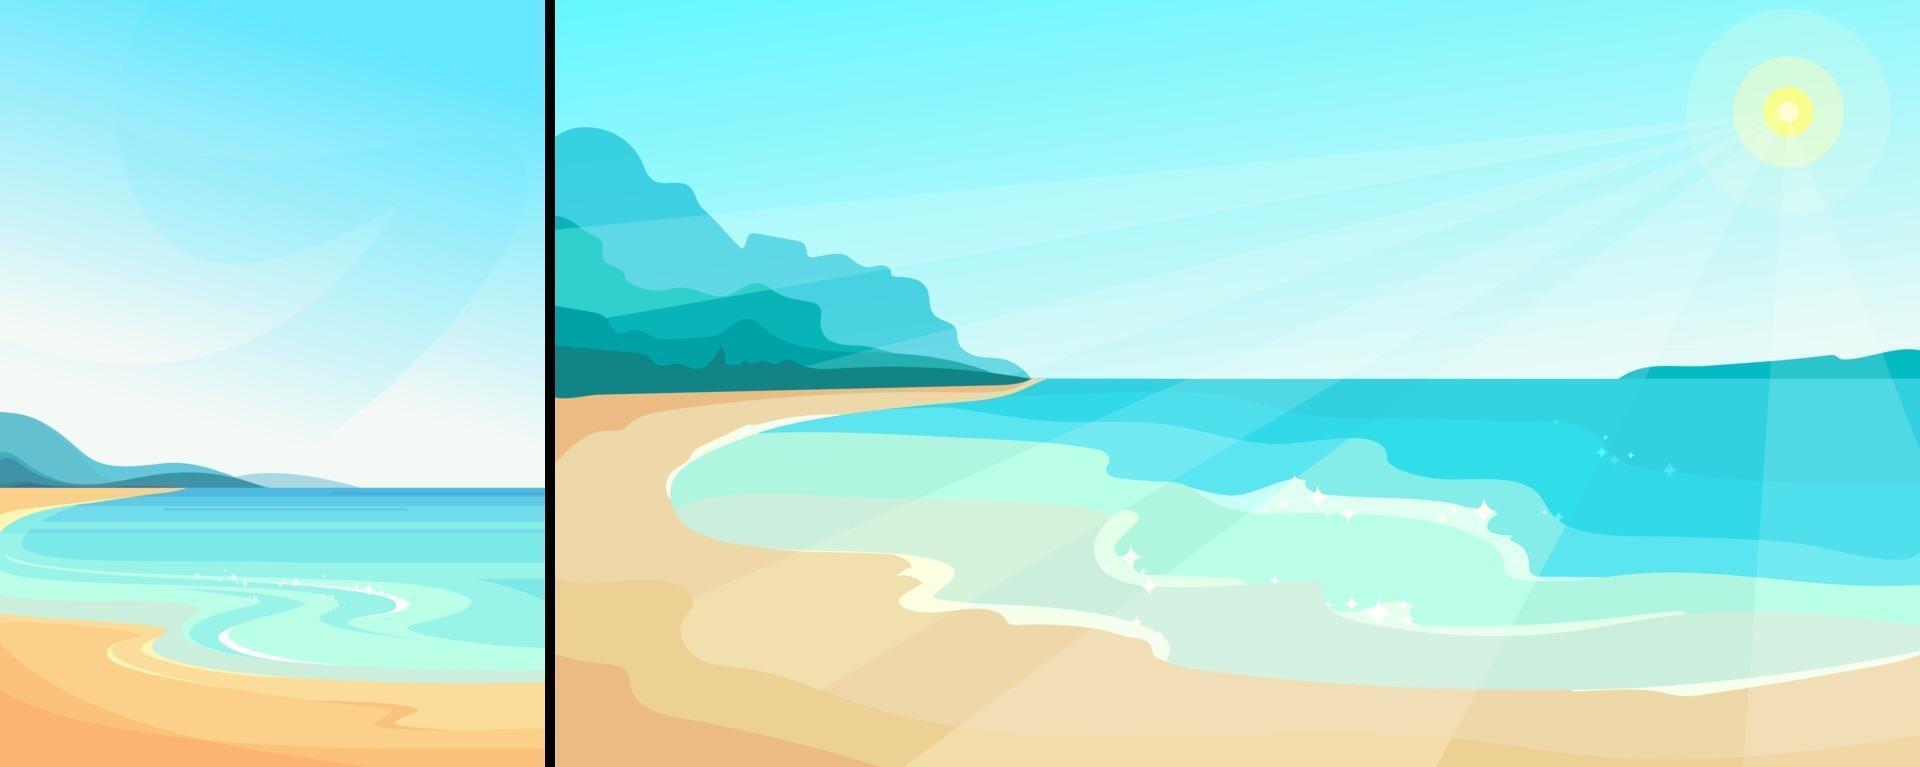 paisaje marino con playa en un día soleado en orientación vertical y horizontal vector